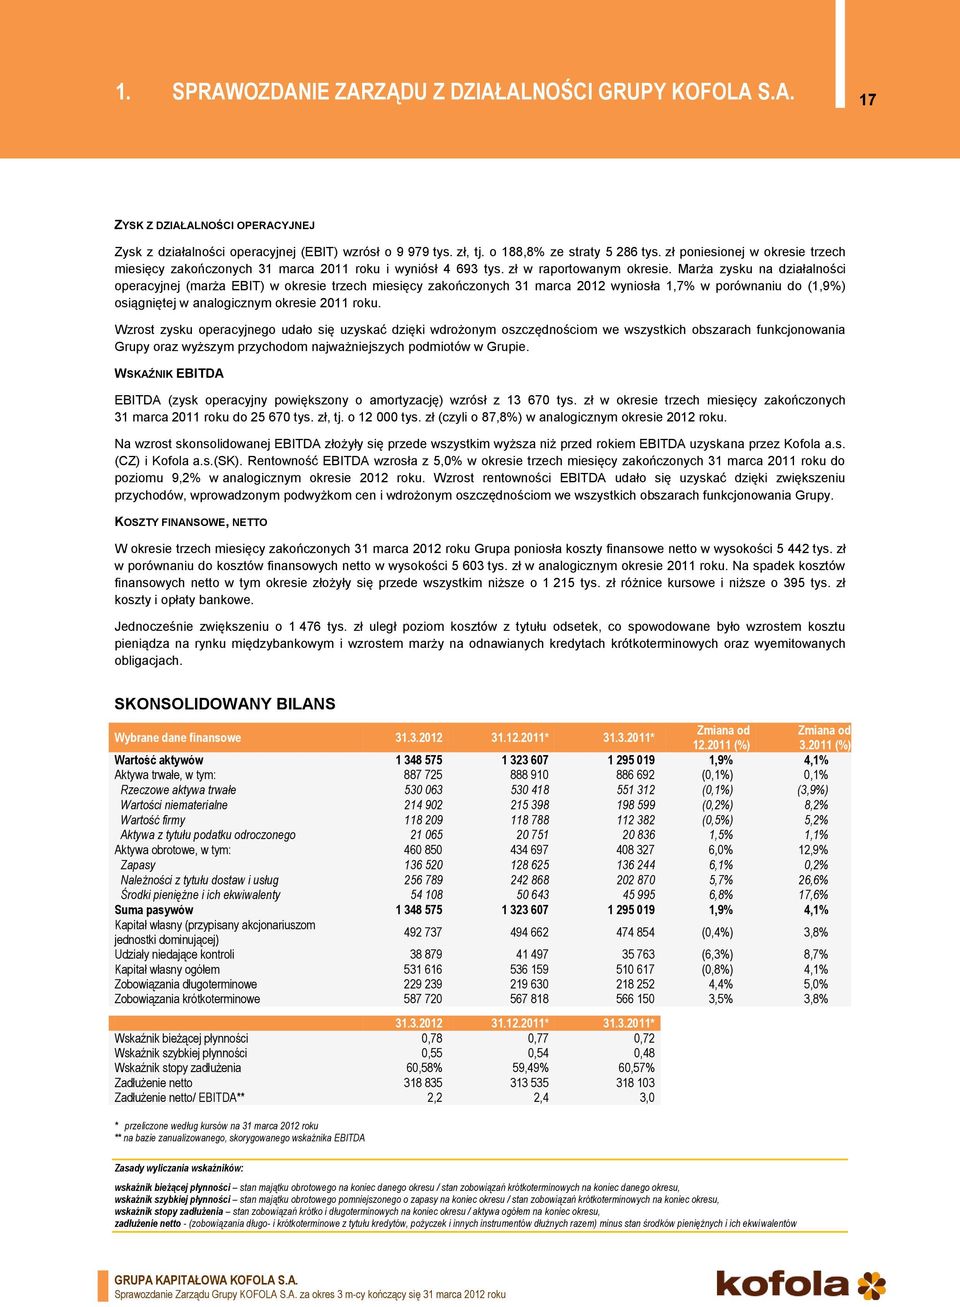 Marża zysku na działalności operacyjnej (marża EBIT) w okresie trzech miesięcy zakończonych 31 marca 2012 wyniosła 1,7% w porównaniu do (1,9%) osiągniętej w analogicznym okresie 2011 roku.